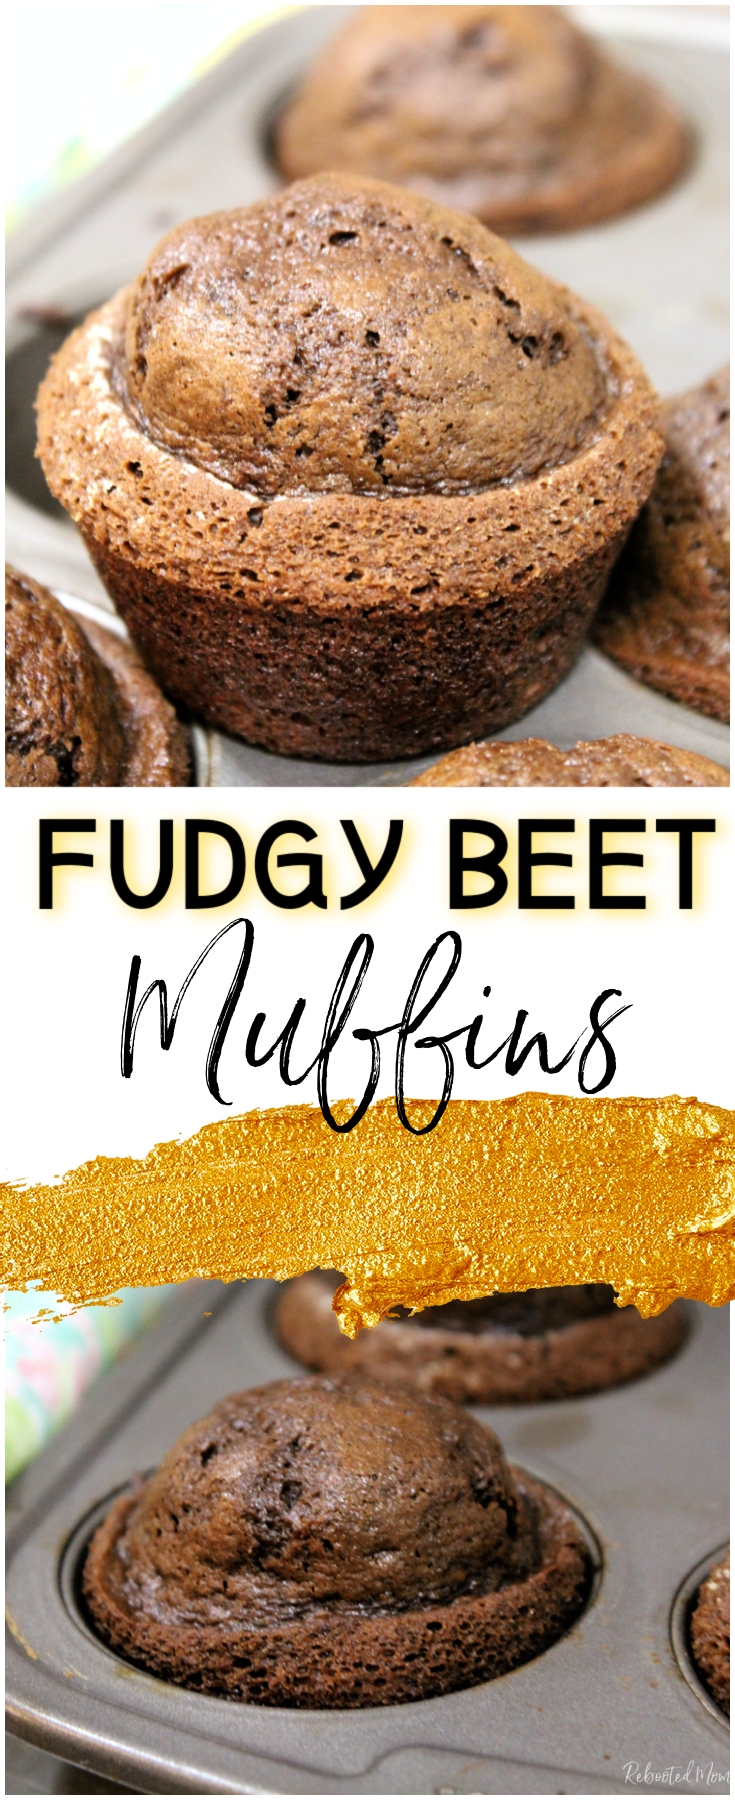 Beet Muffins